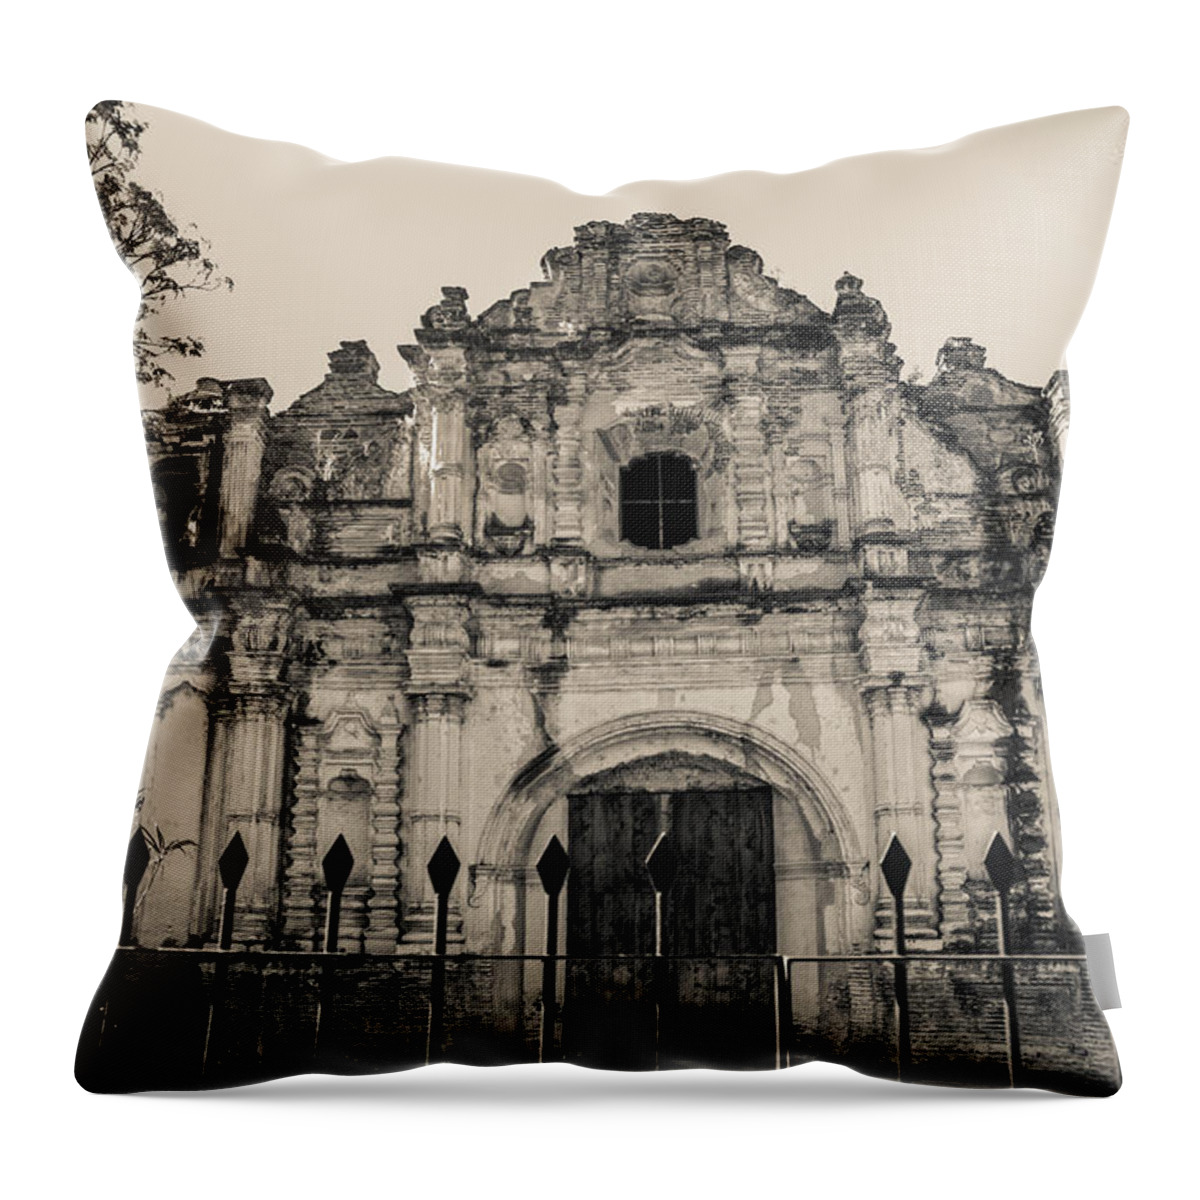 Iglesia San Jose El Viejo Throw Pillow featuring the photograph Iglesia San Jose El Viejo - Antigua Guatemala by Totto Ponce